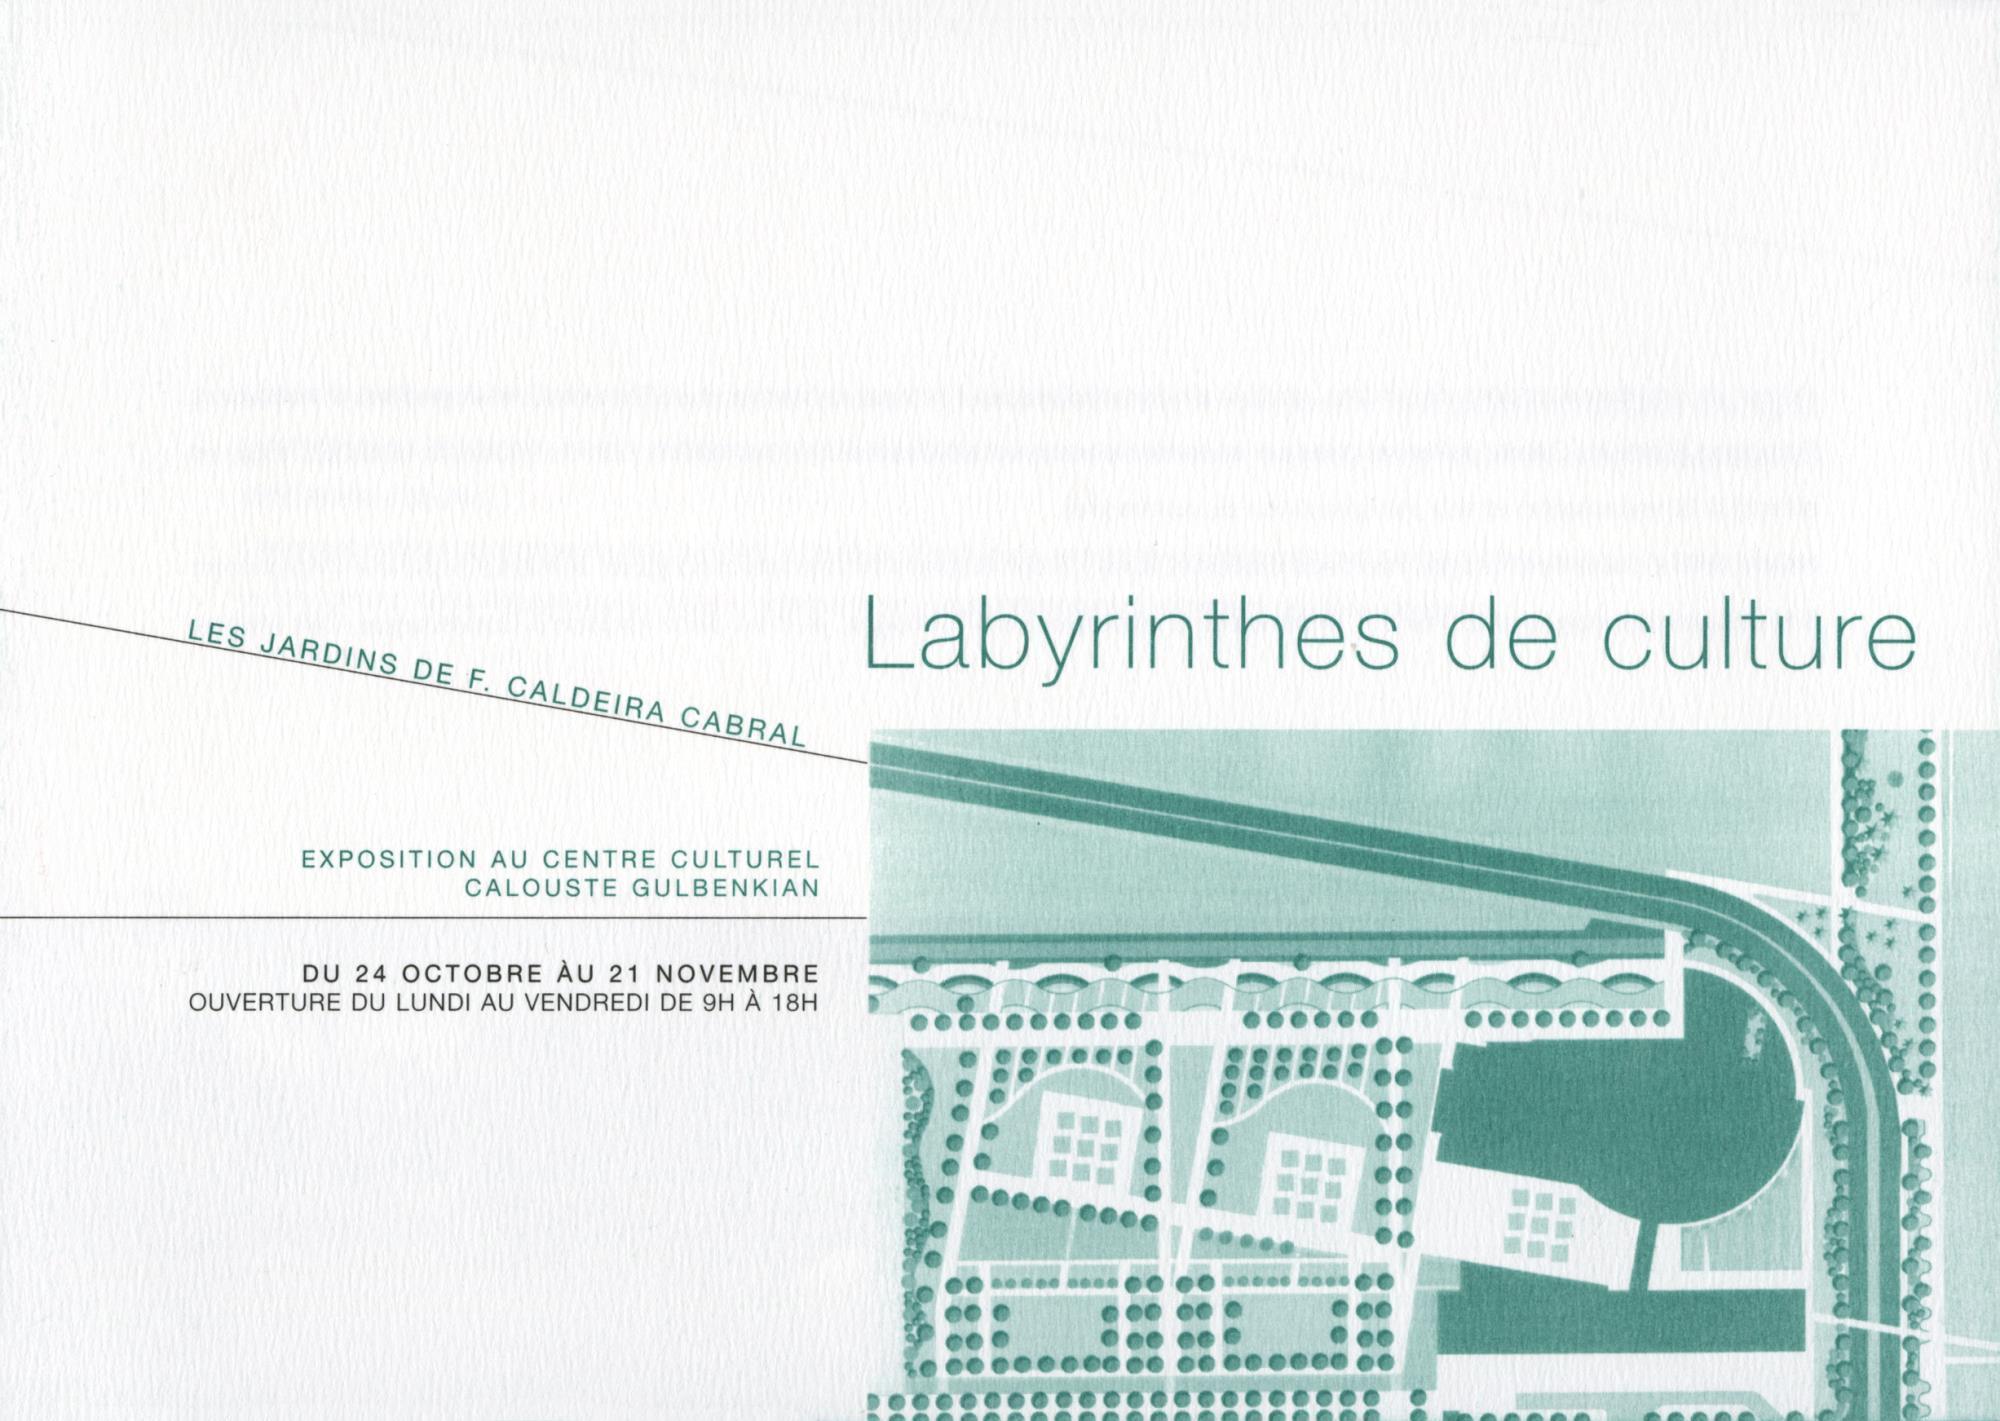 Labyrinthes de Culture. Les Jardins de Francisco Caldeira Cabral